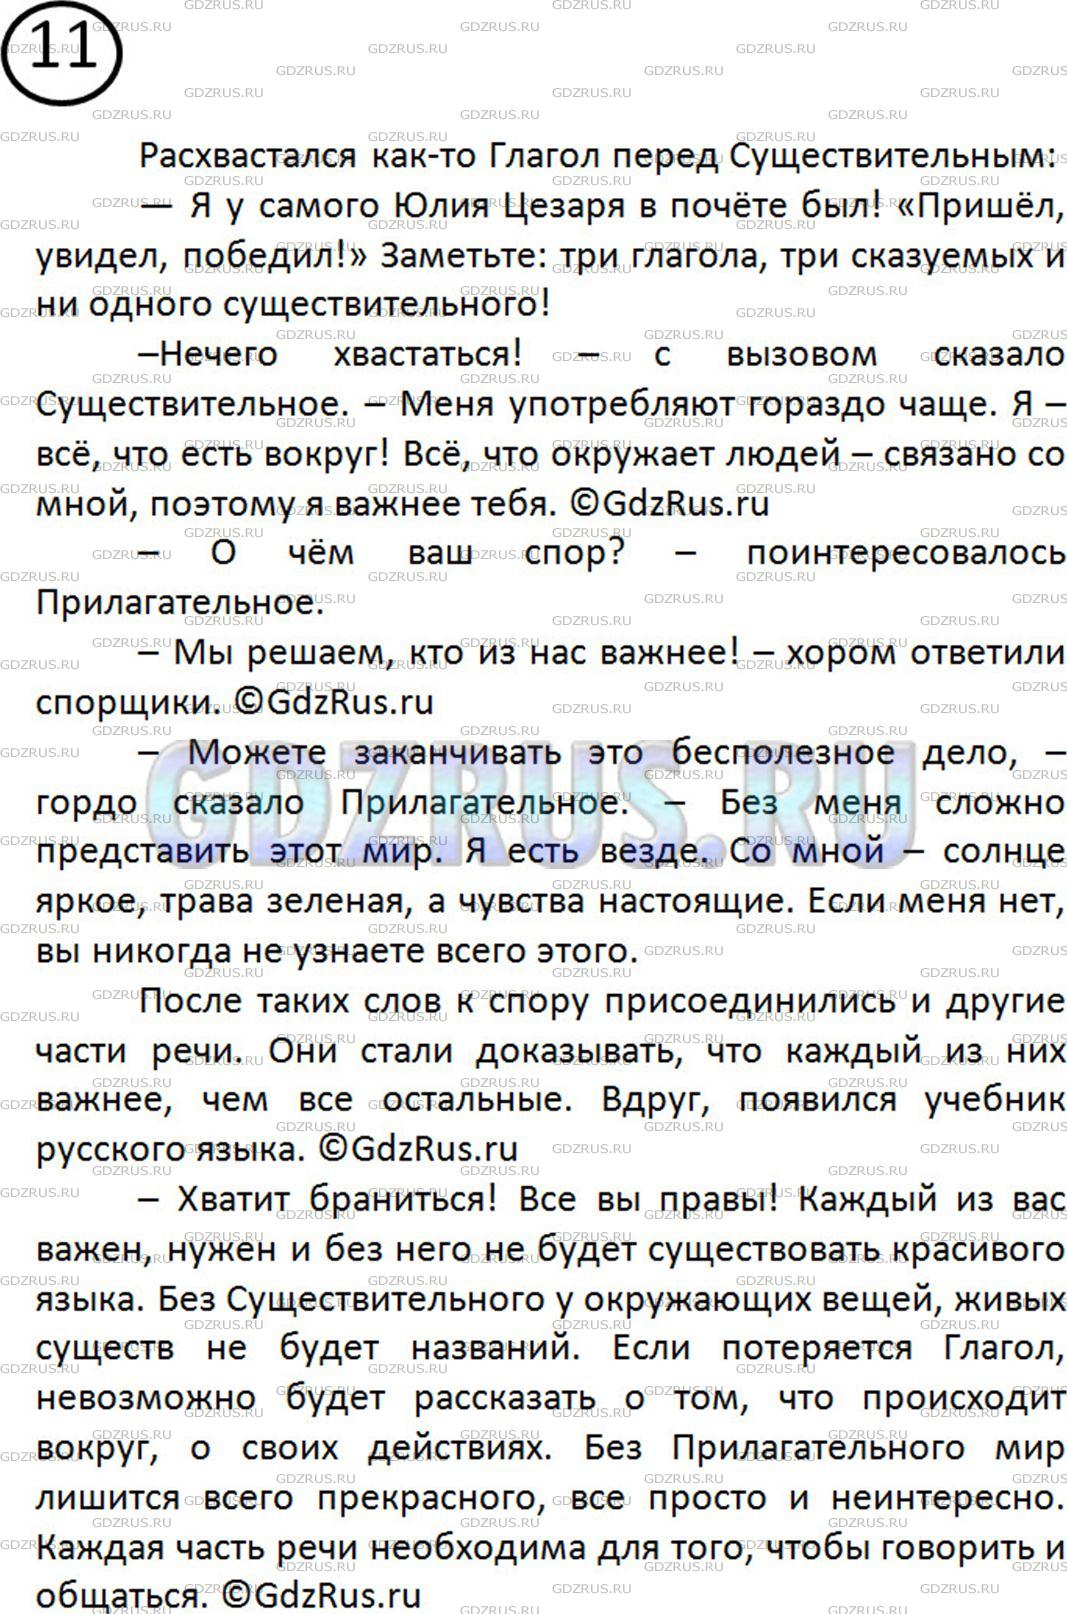 Фото решения 2: Номер №11 из ГДЗ по Русскому языку 5 класс: Ладыженская Т.А. 2012г.